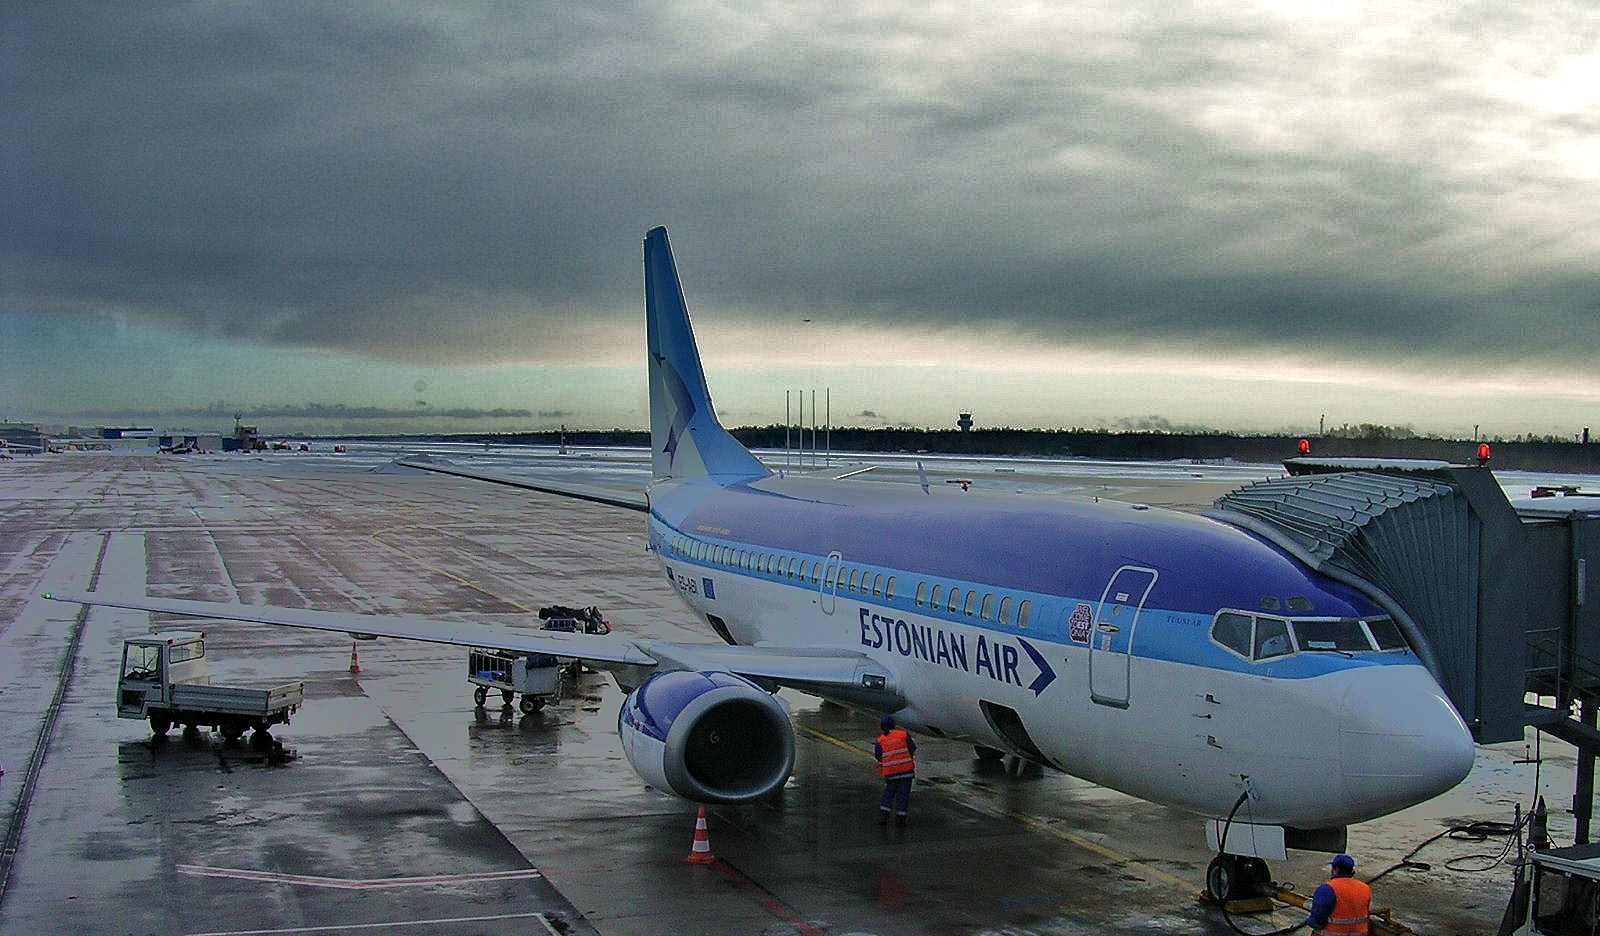 Estonian Air Makes History in Loyalty Marketing